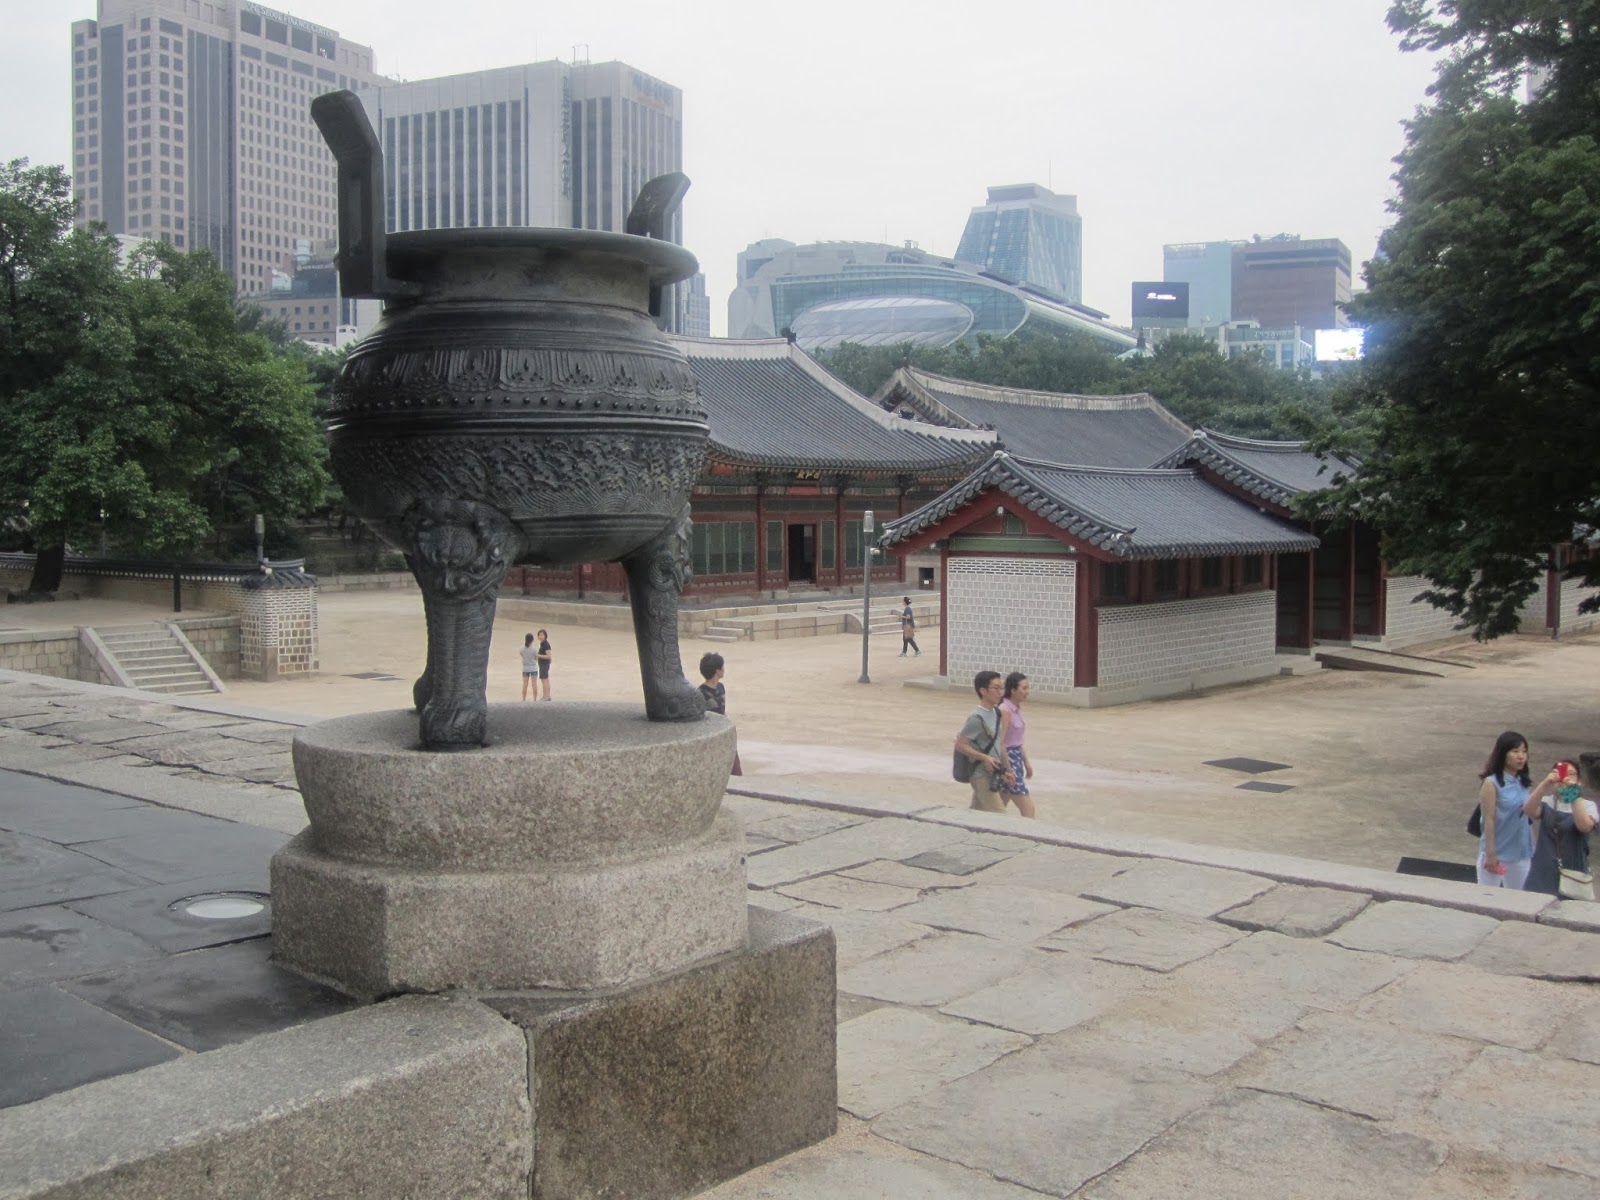 Fundo A Câmara Do Rei Na Corte Real De Seul Na Colina De Hanseong